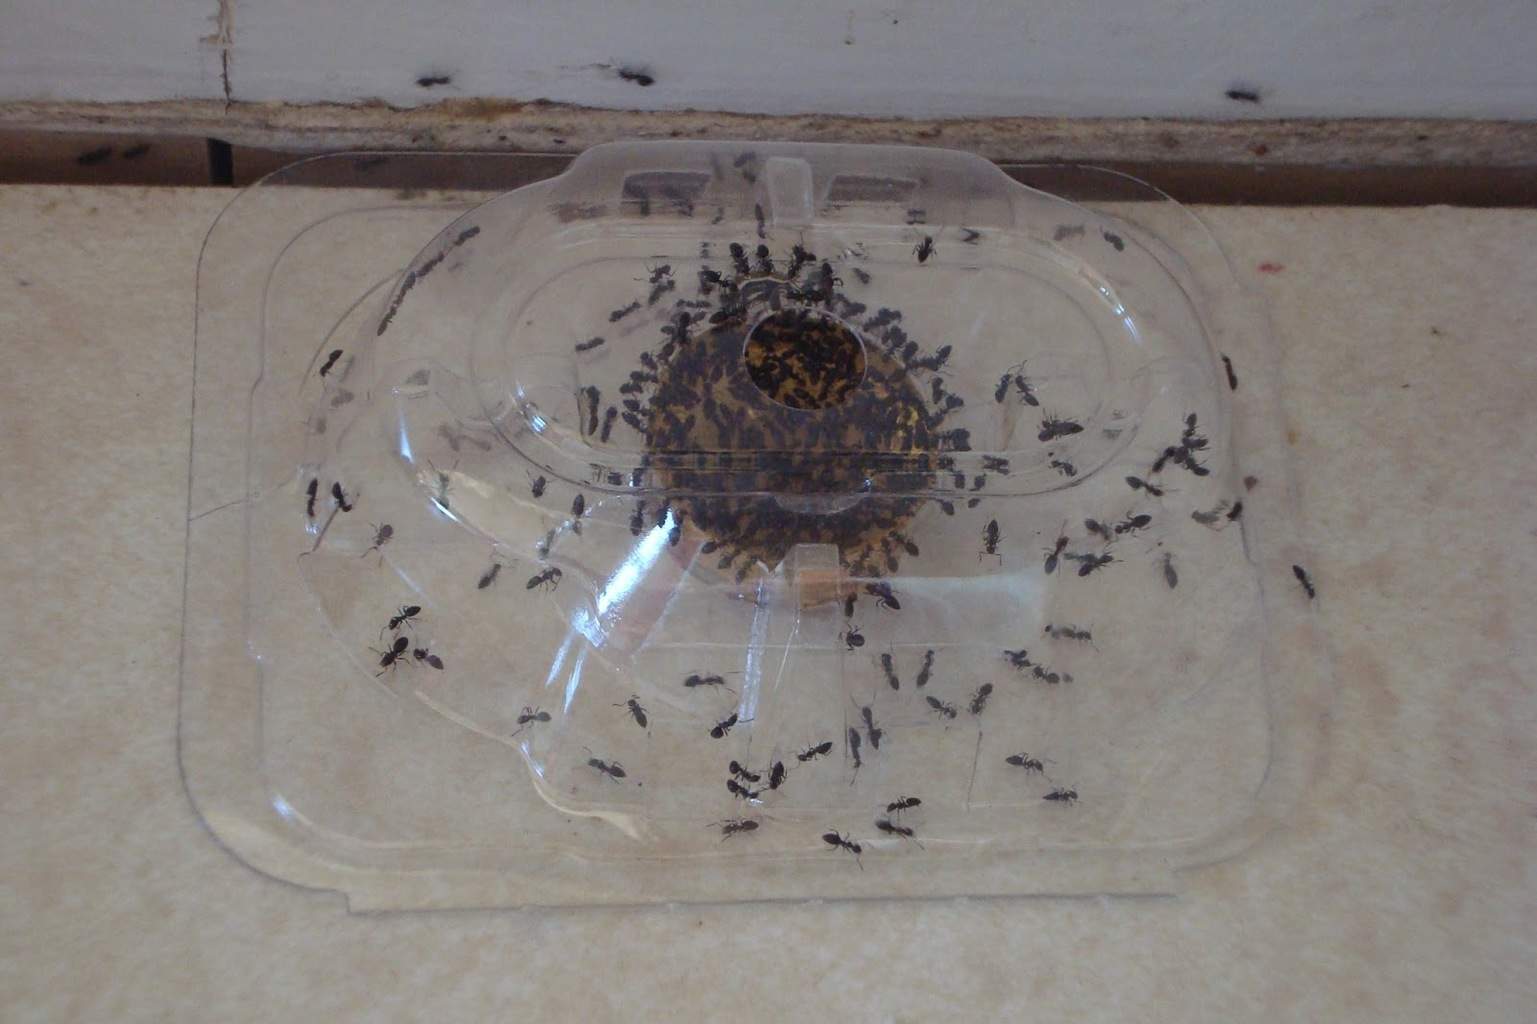 Как избавиться от муравьев на участке навсегда!